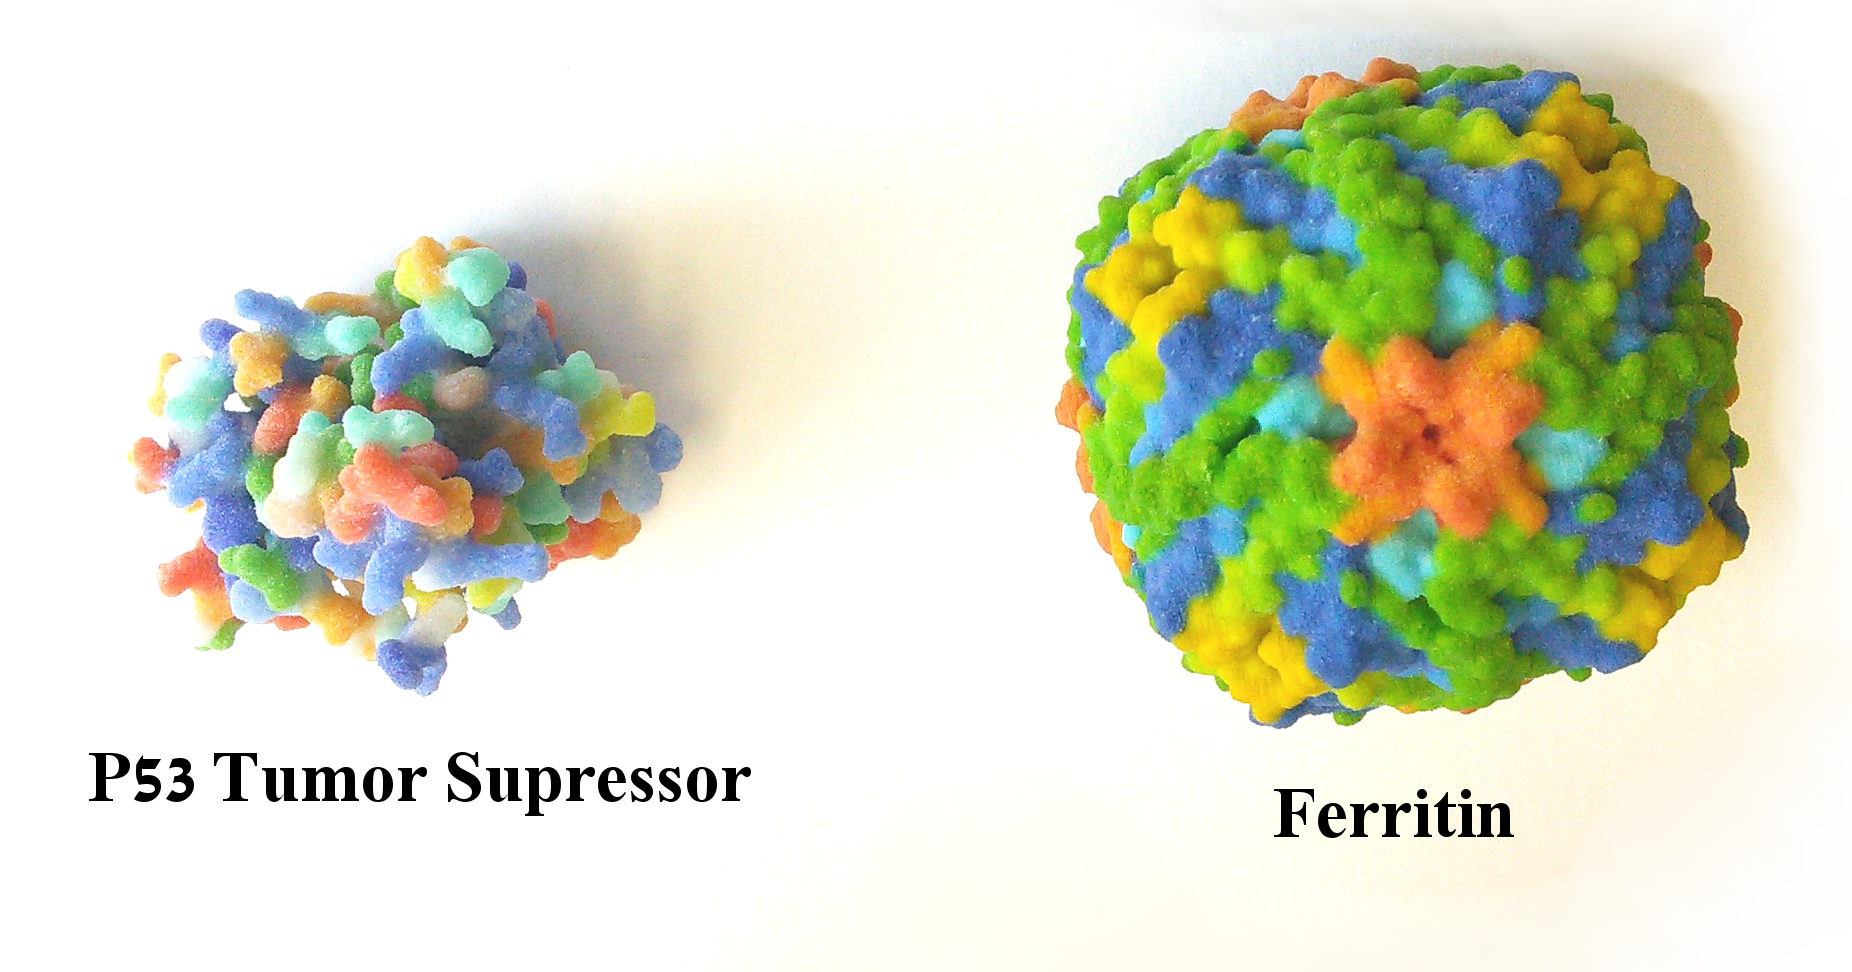 P53 and Ferritin molecules